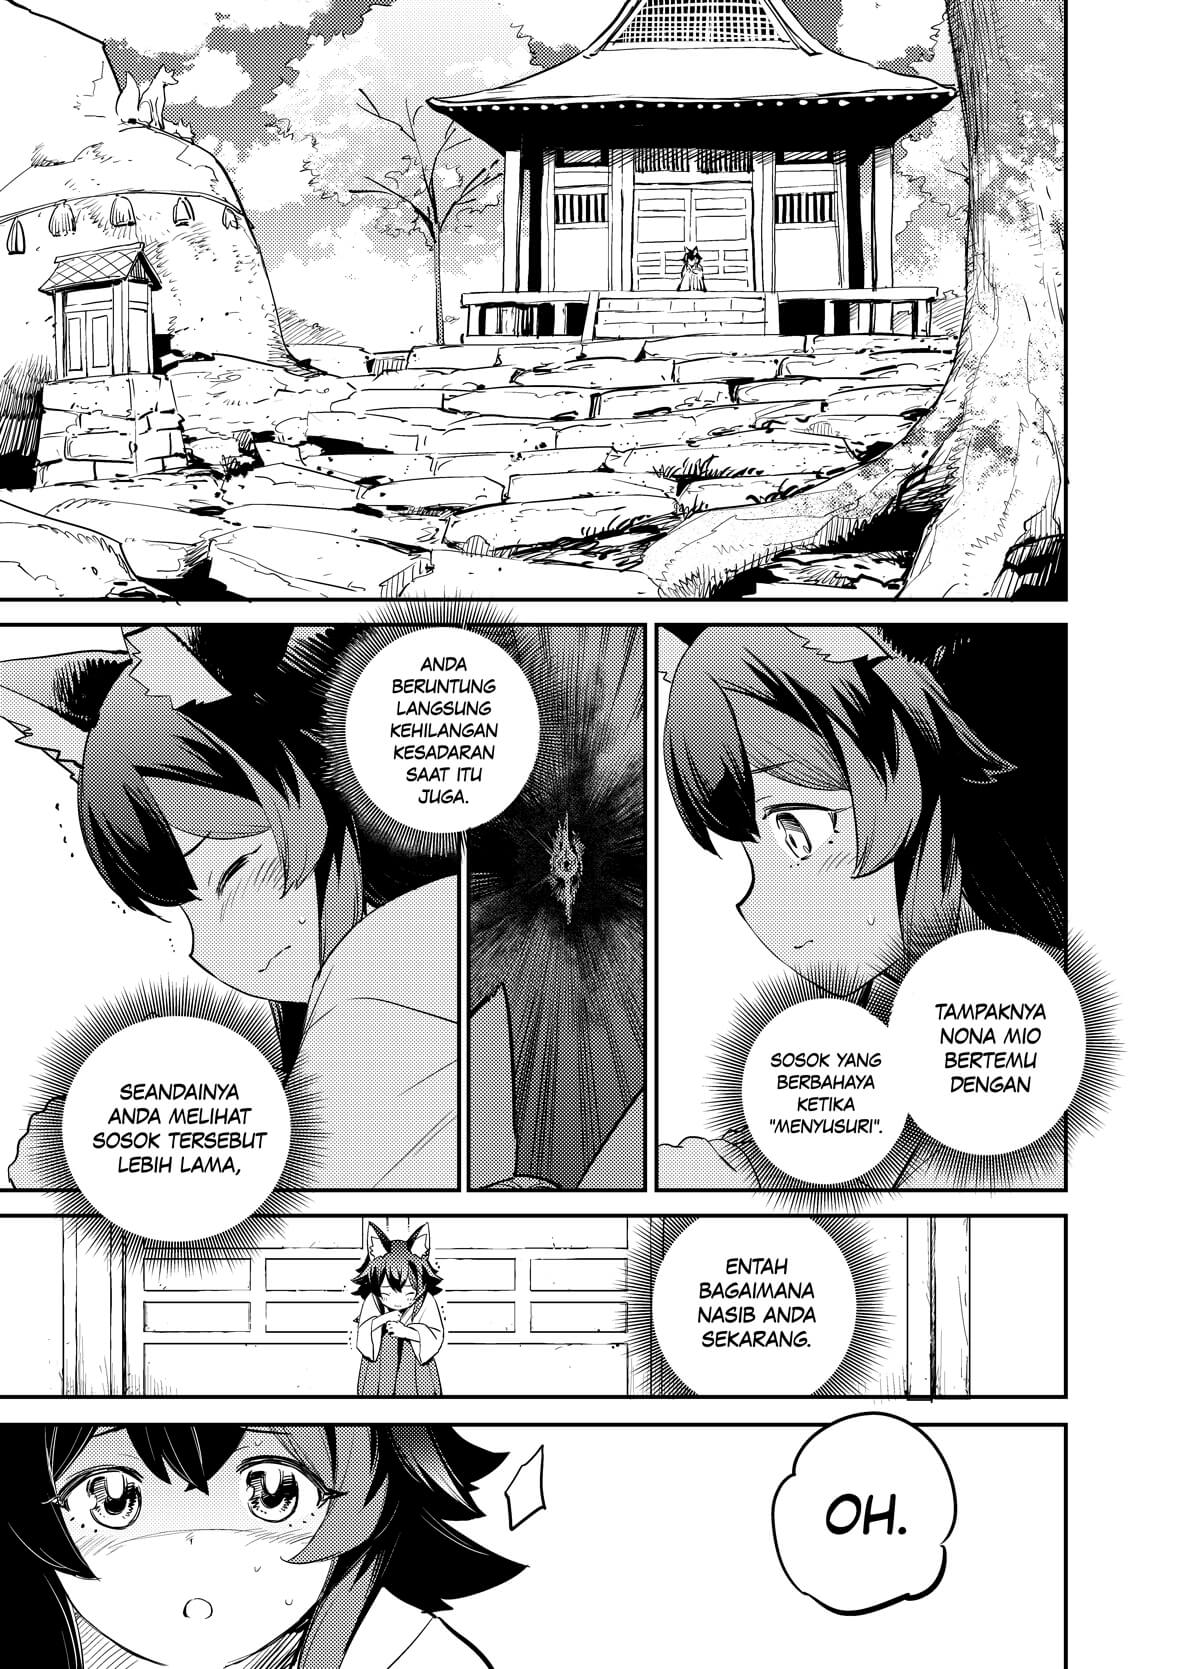 Holoearth Chronicles Side:E ~Yamato Phantasia~ Chapter 4